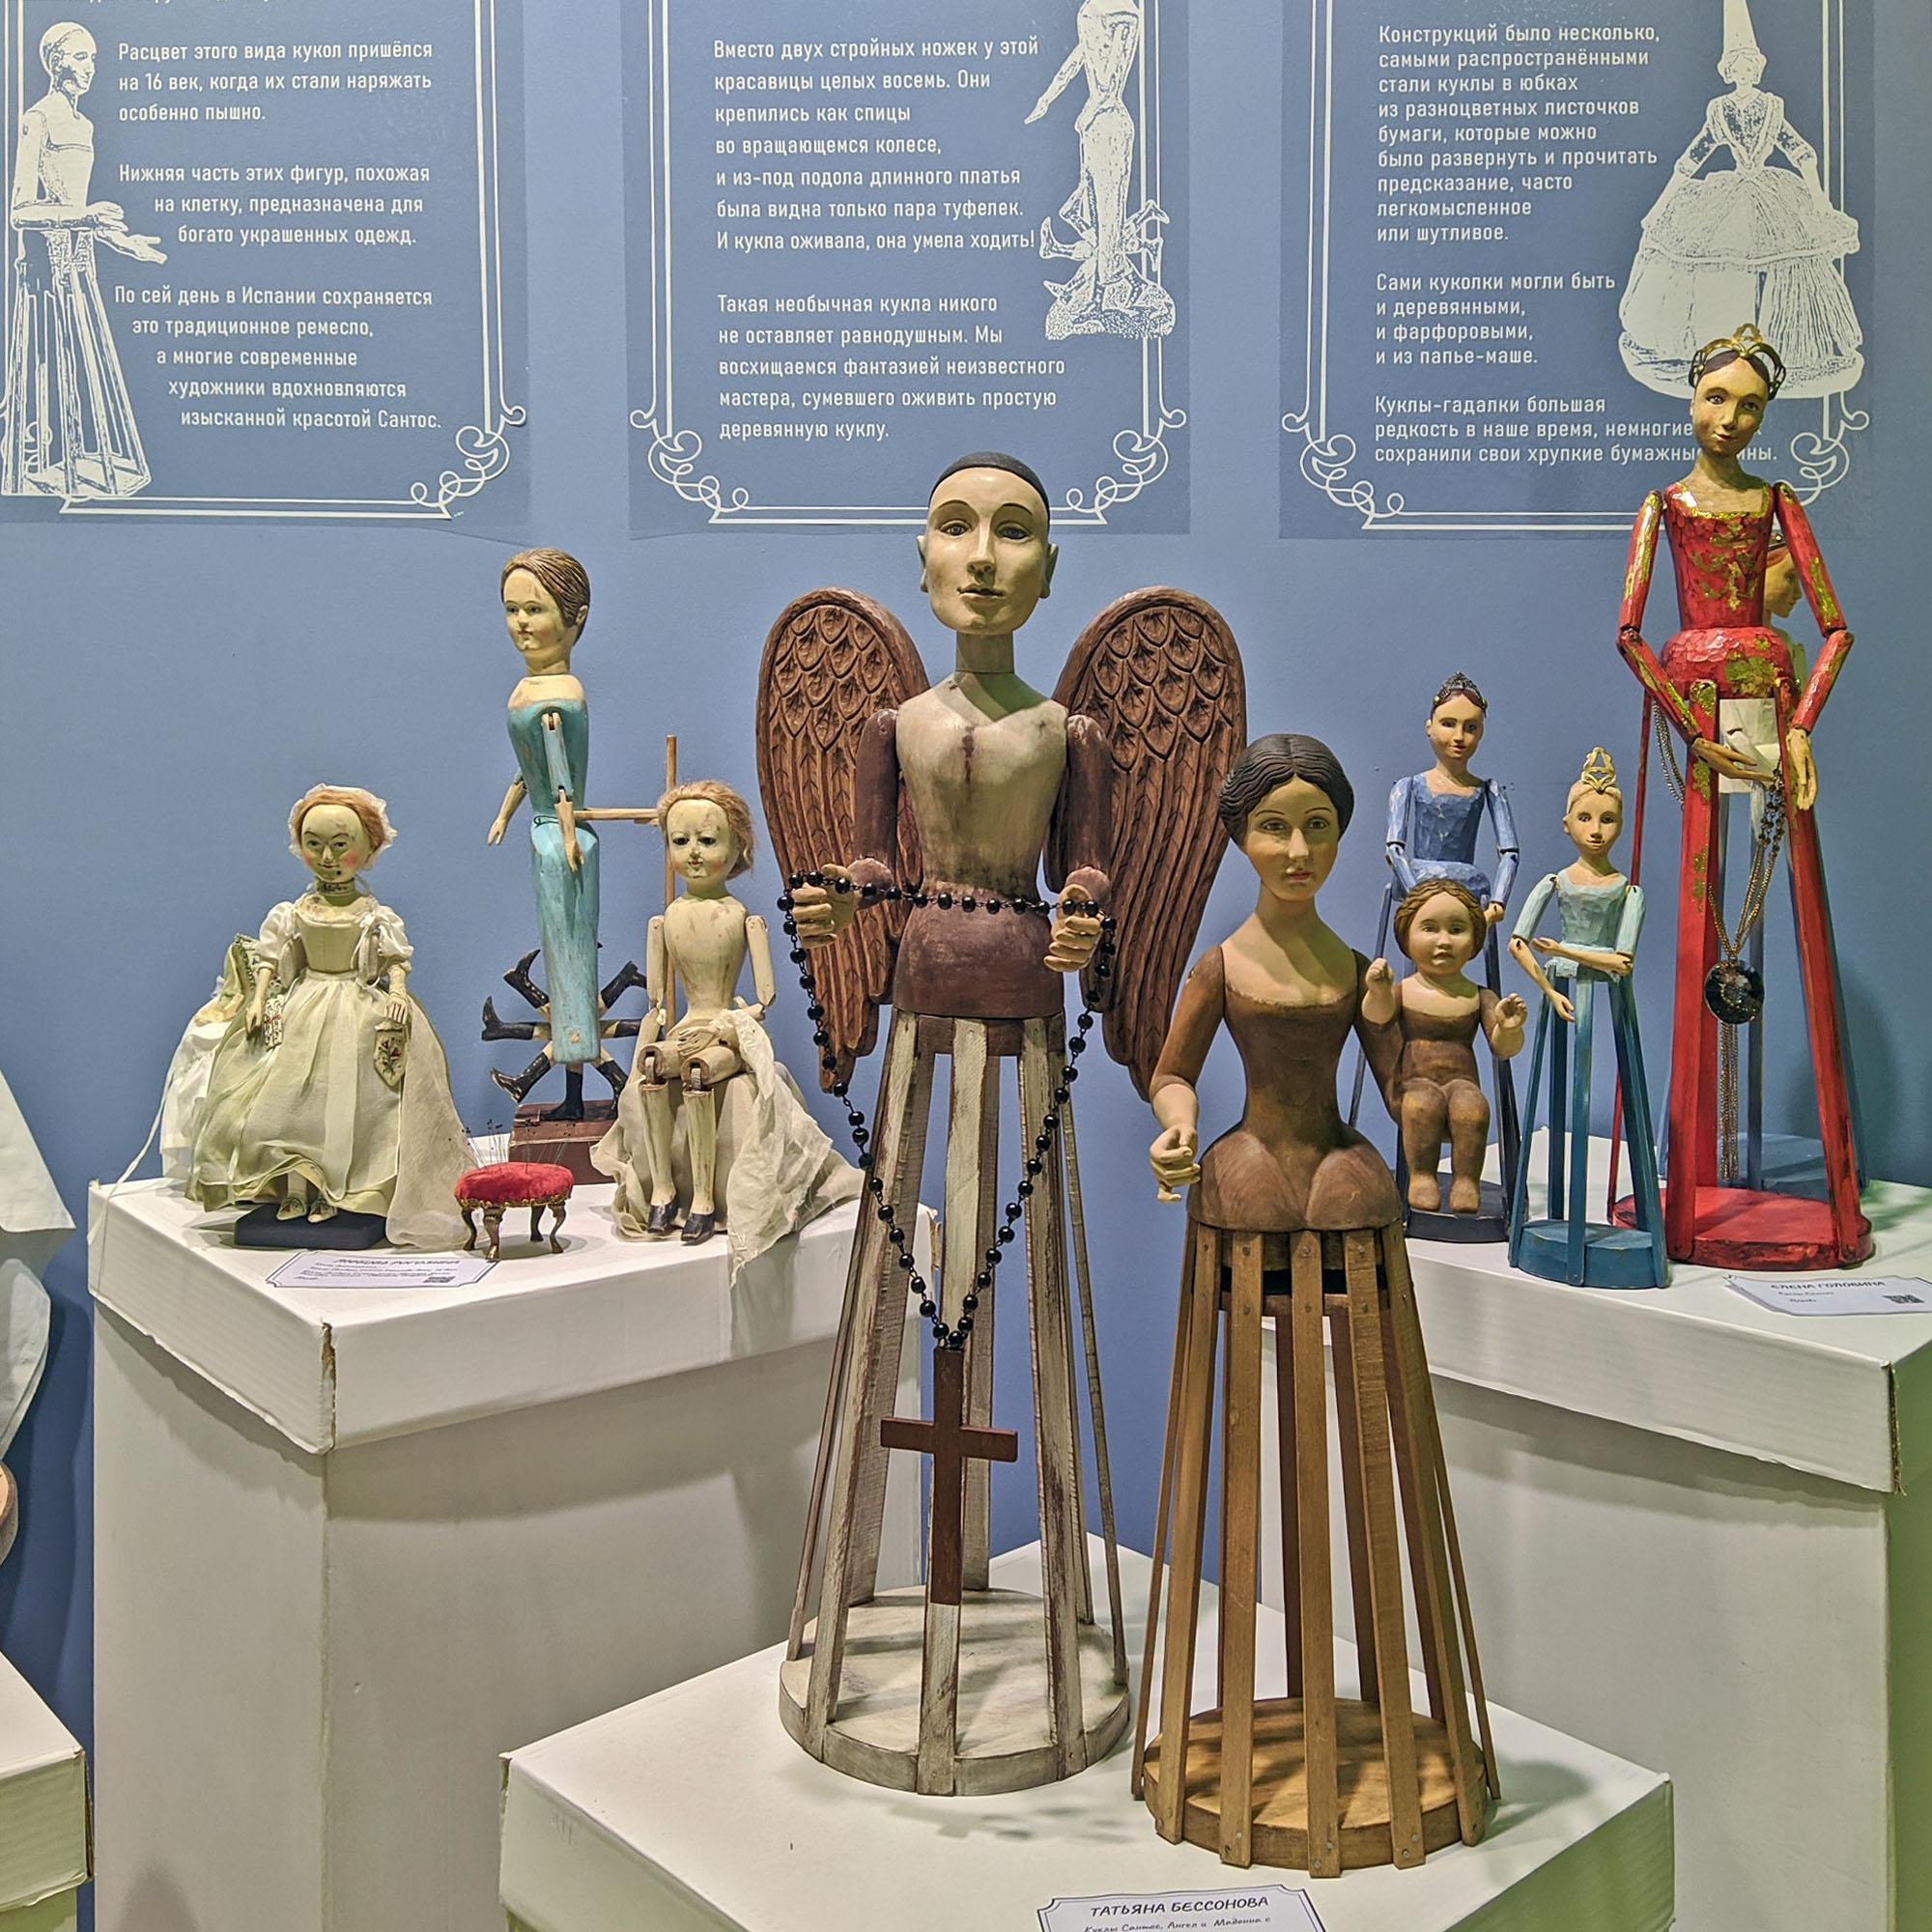 Балаганчик Бураттини. Проект «Истории деревянной куклы»